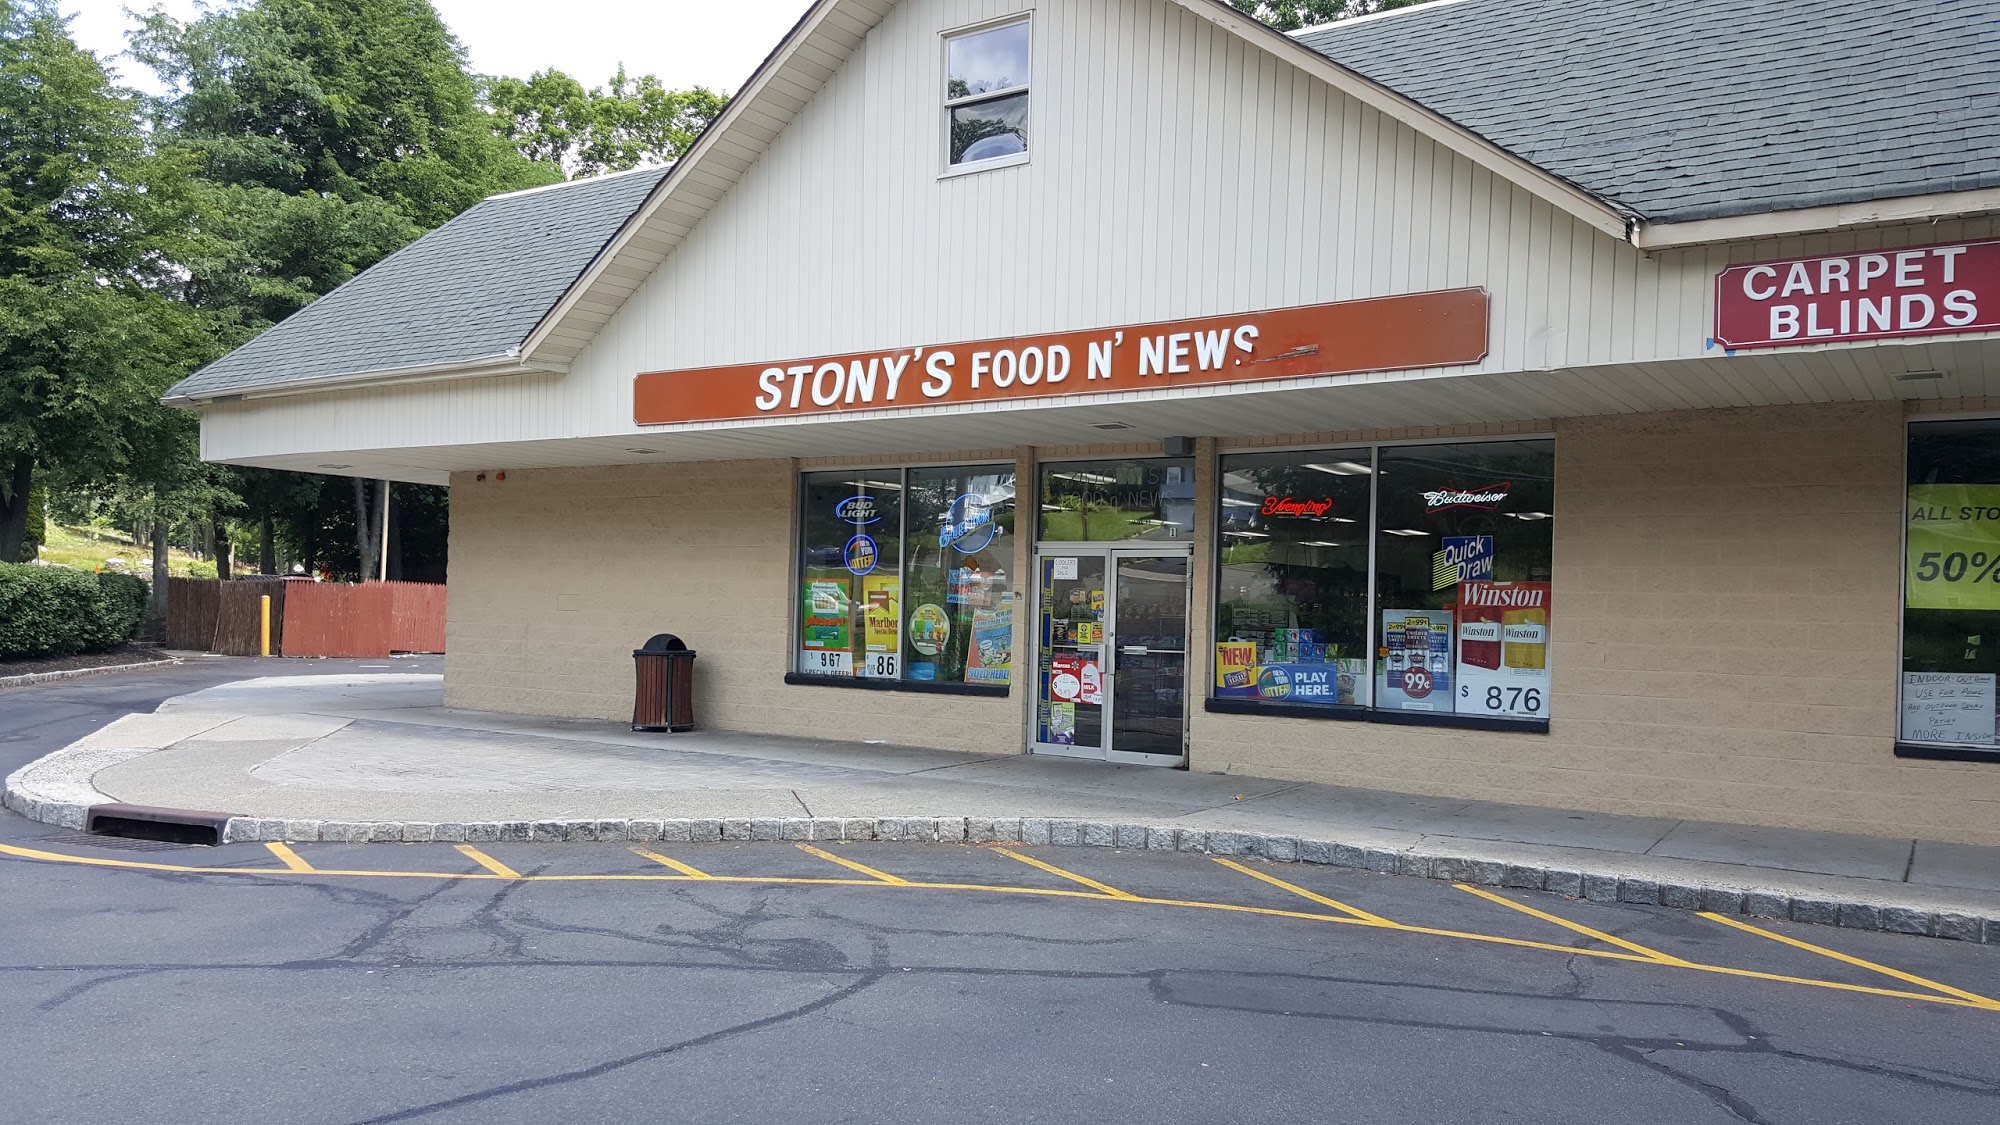 Stony's Food N' News